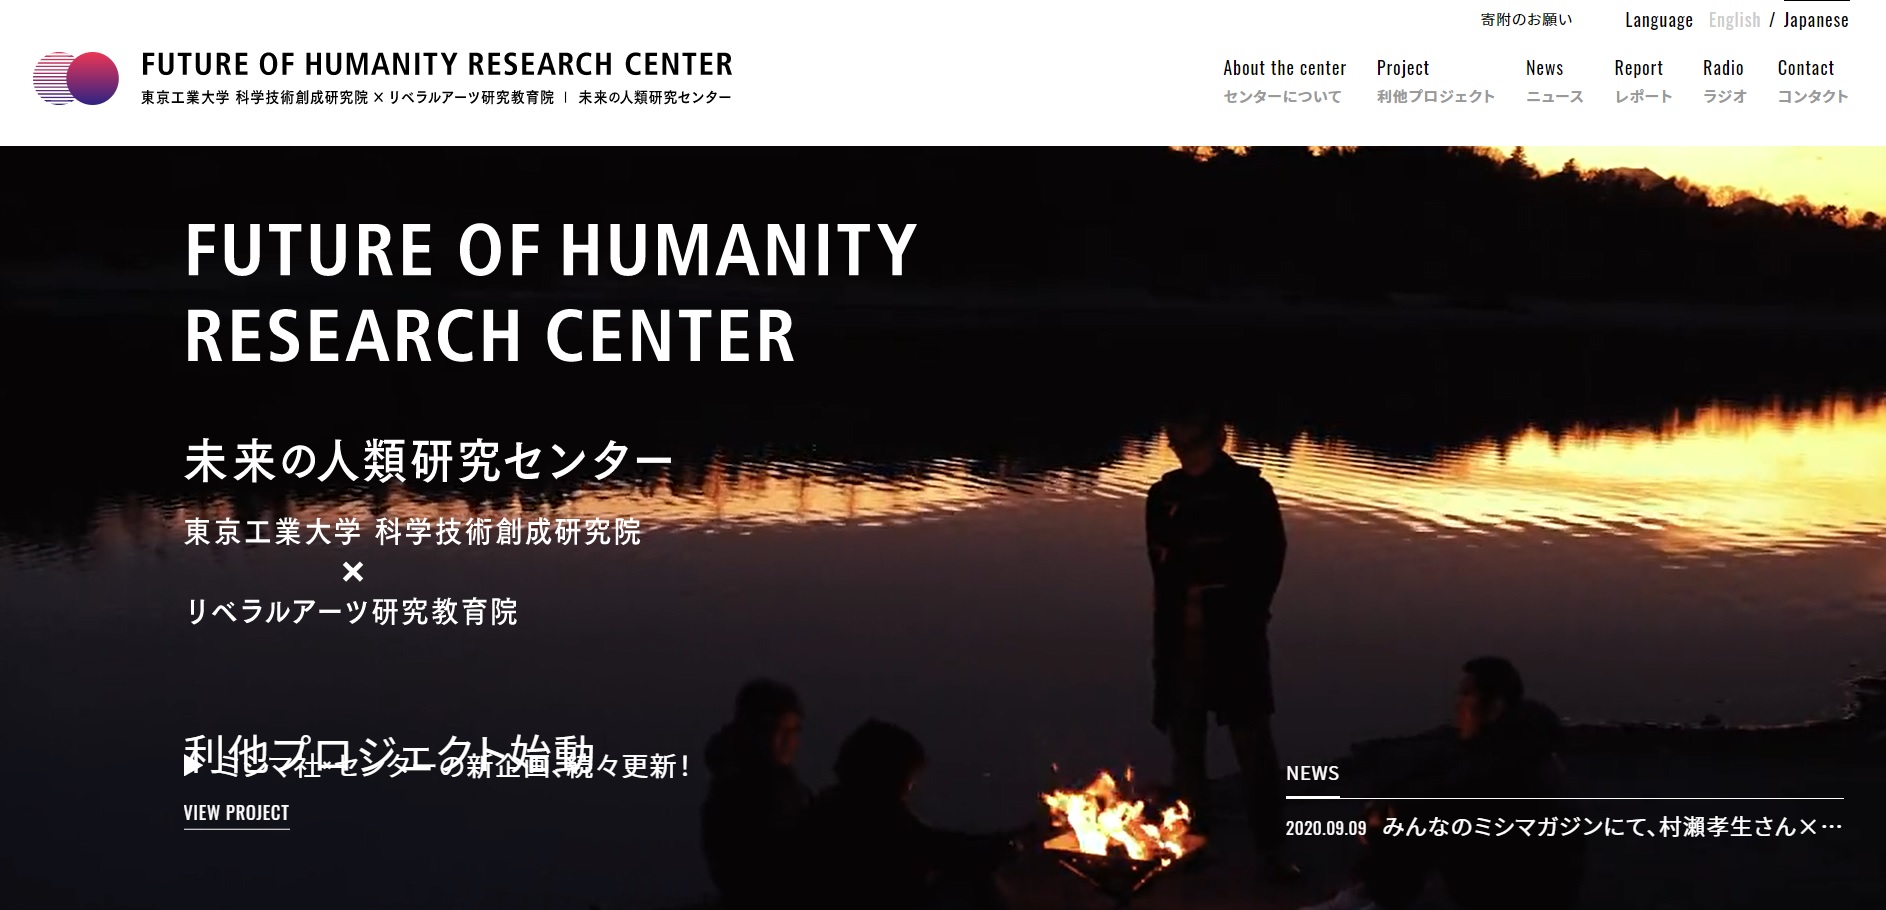 センターの公式ウェブサイト。水辺で焚火を囲む先生たち…その理由は後ほど